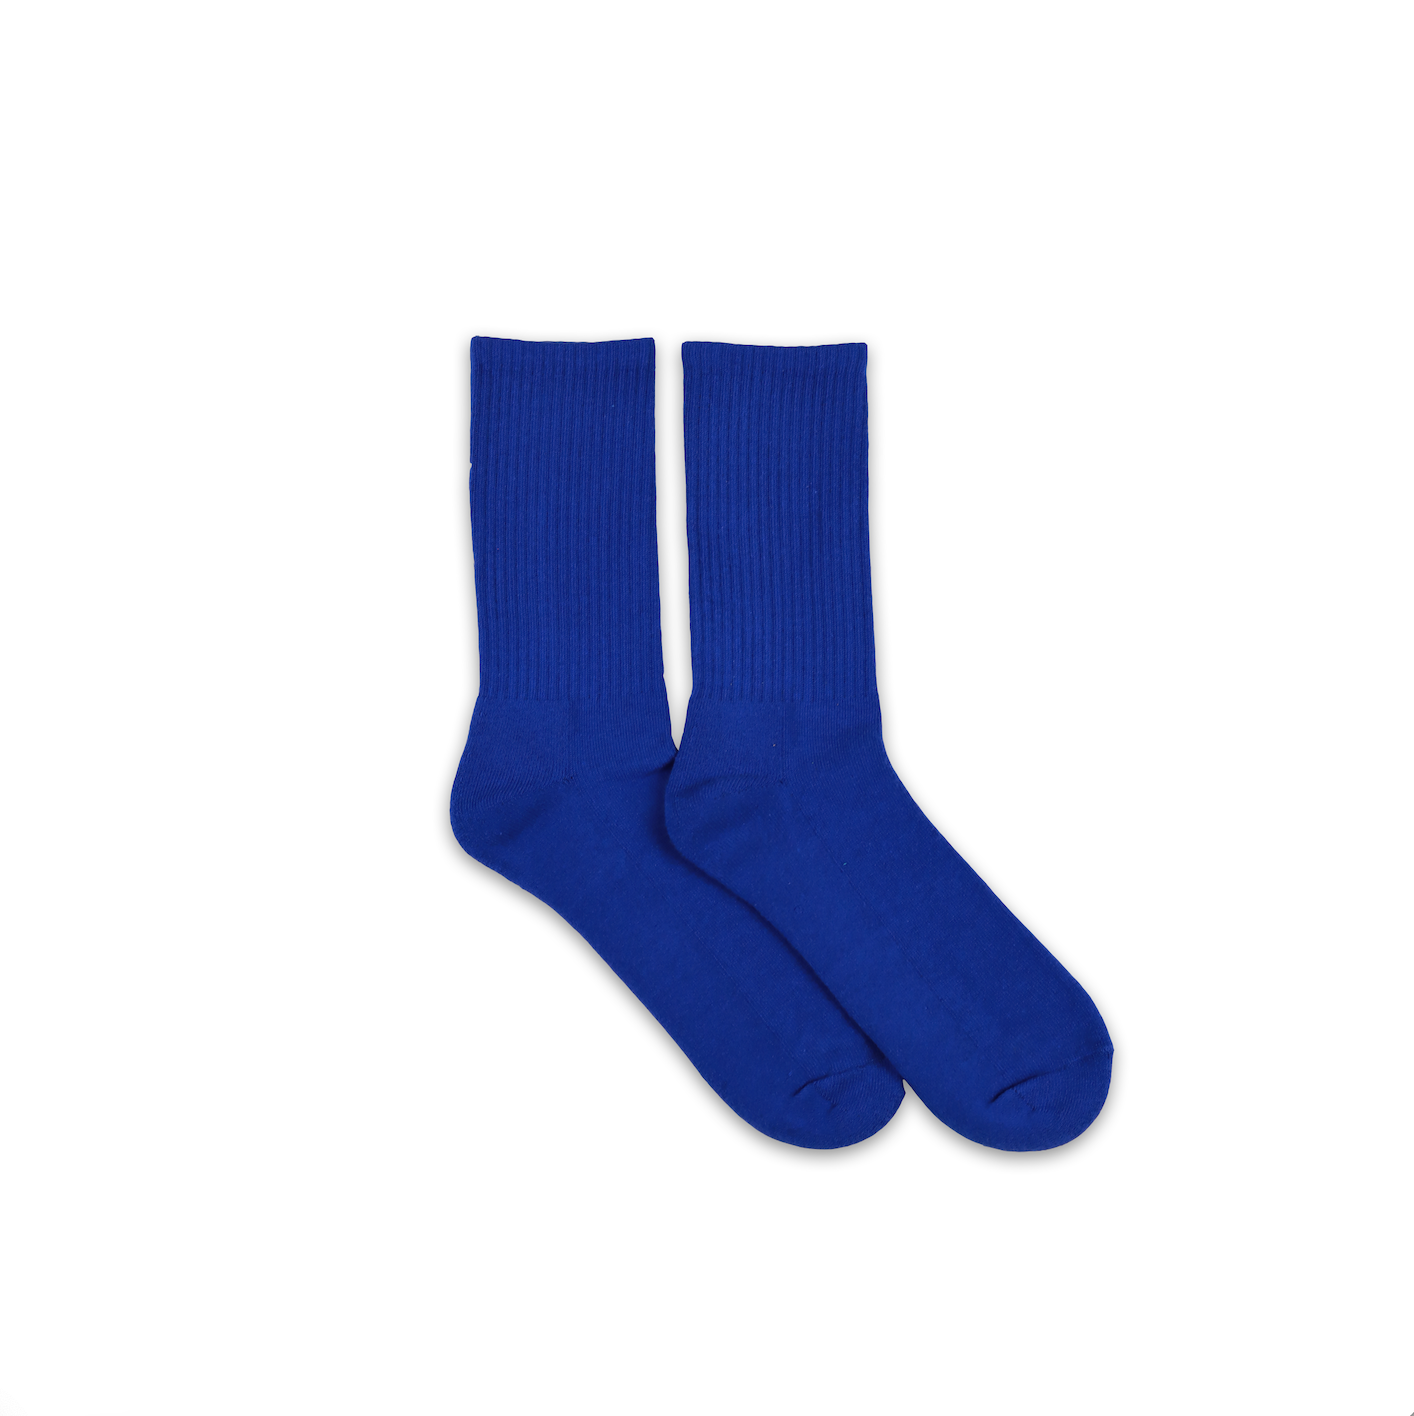 Team Blue Socks